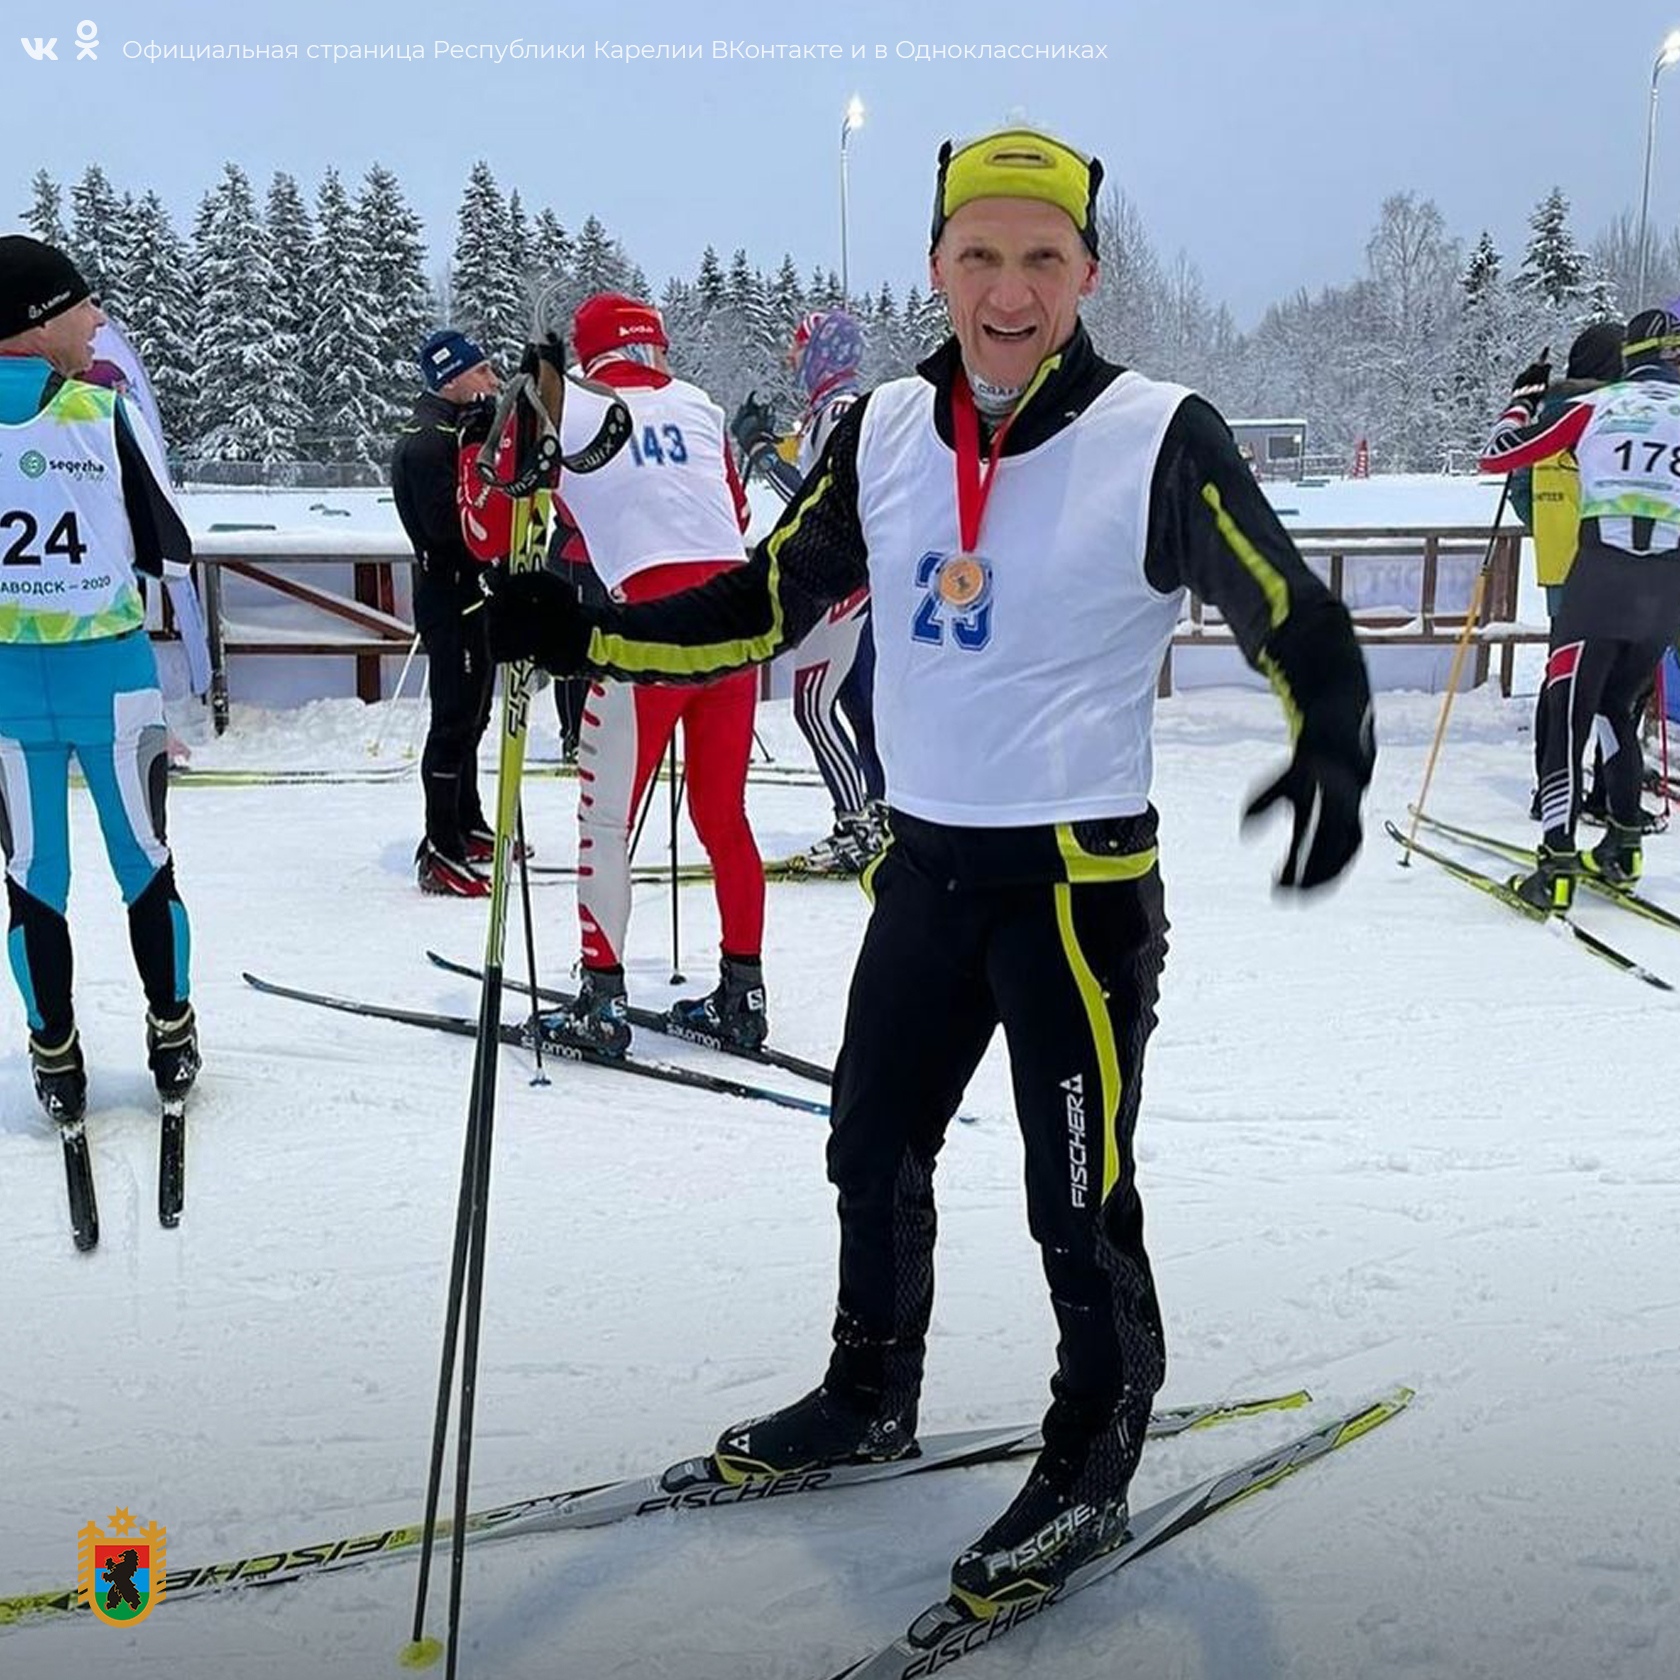 Четырёхкратный чемпион мира Владимир Драчев финишировал вторым в лыжной гонке в Петрозаводске 